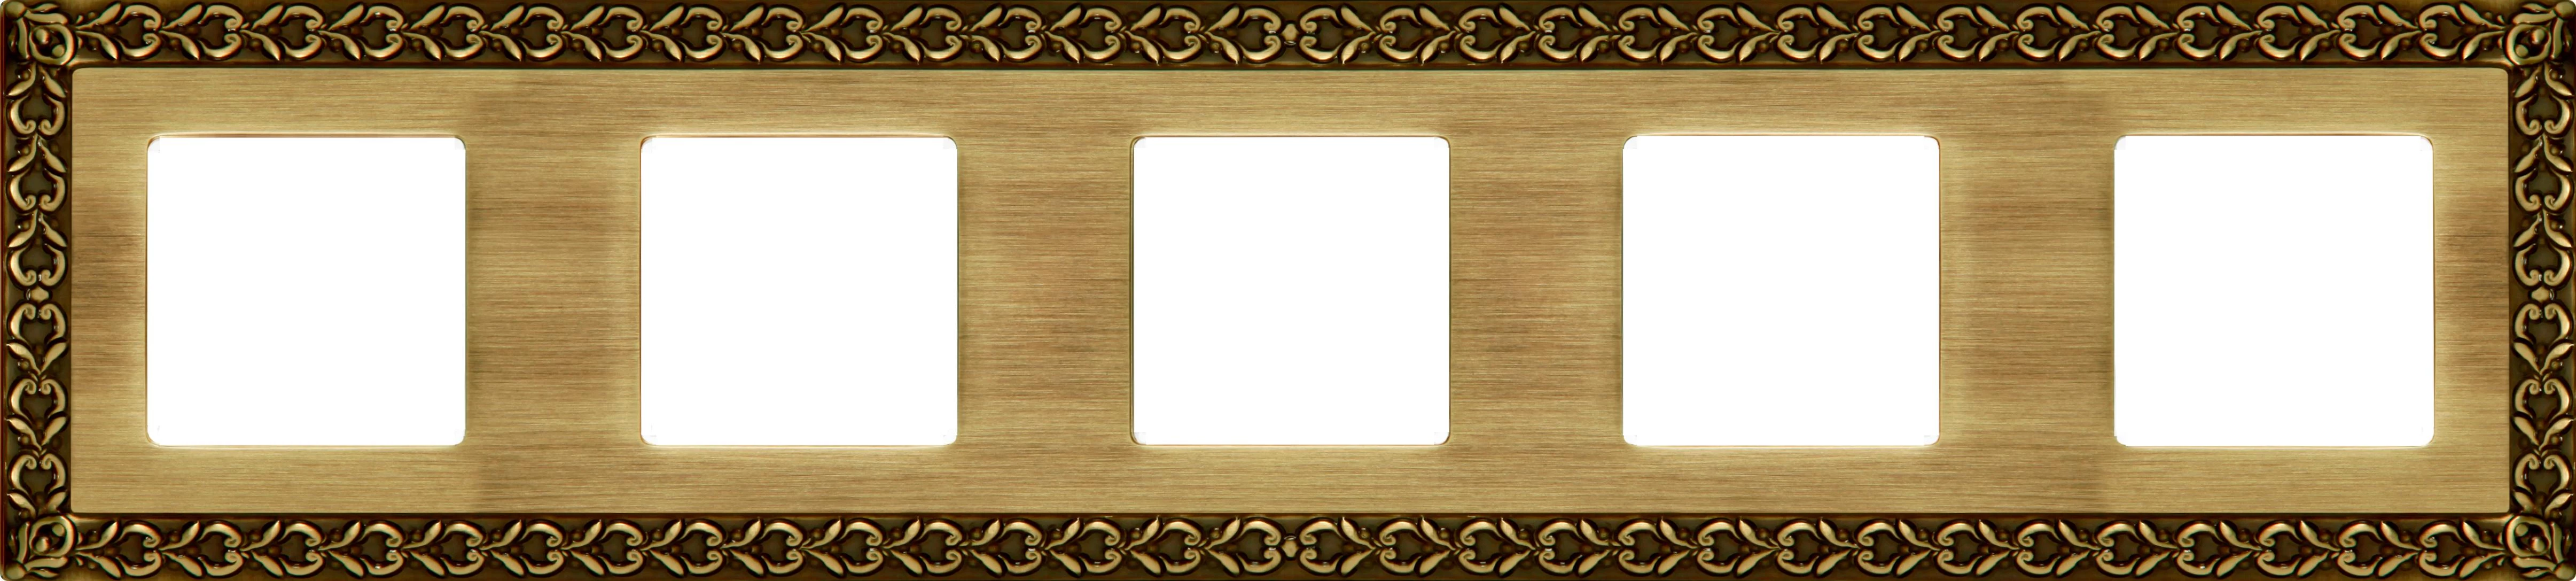  артикул FD01225PB название Рамка 5-ая (пятерная), цвет Светлая бронза, San Sebastian, Fede